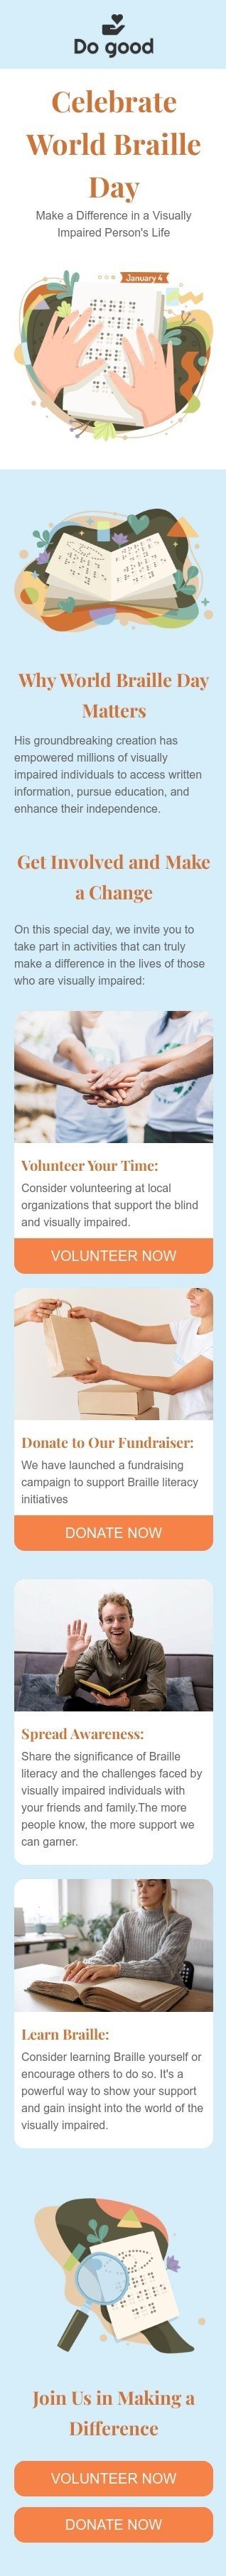 Plantilla de correo electrónico «Hacer un cambio» de Día Mundial del Braille para la industria de sin fines de lucro y caridad Vista de móvil